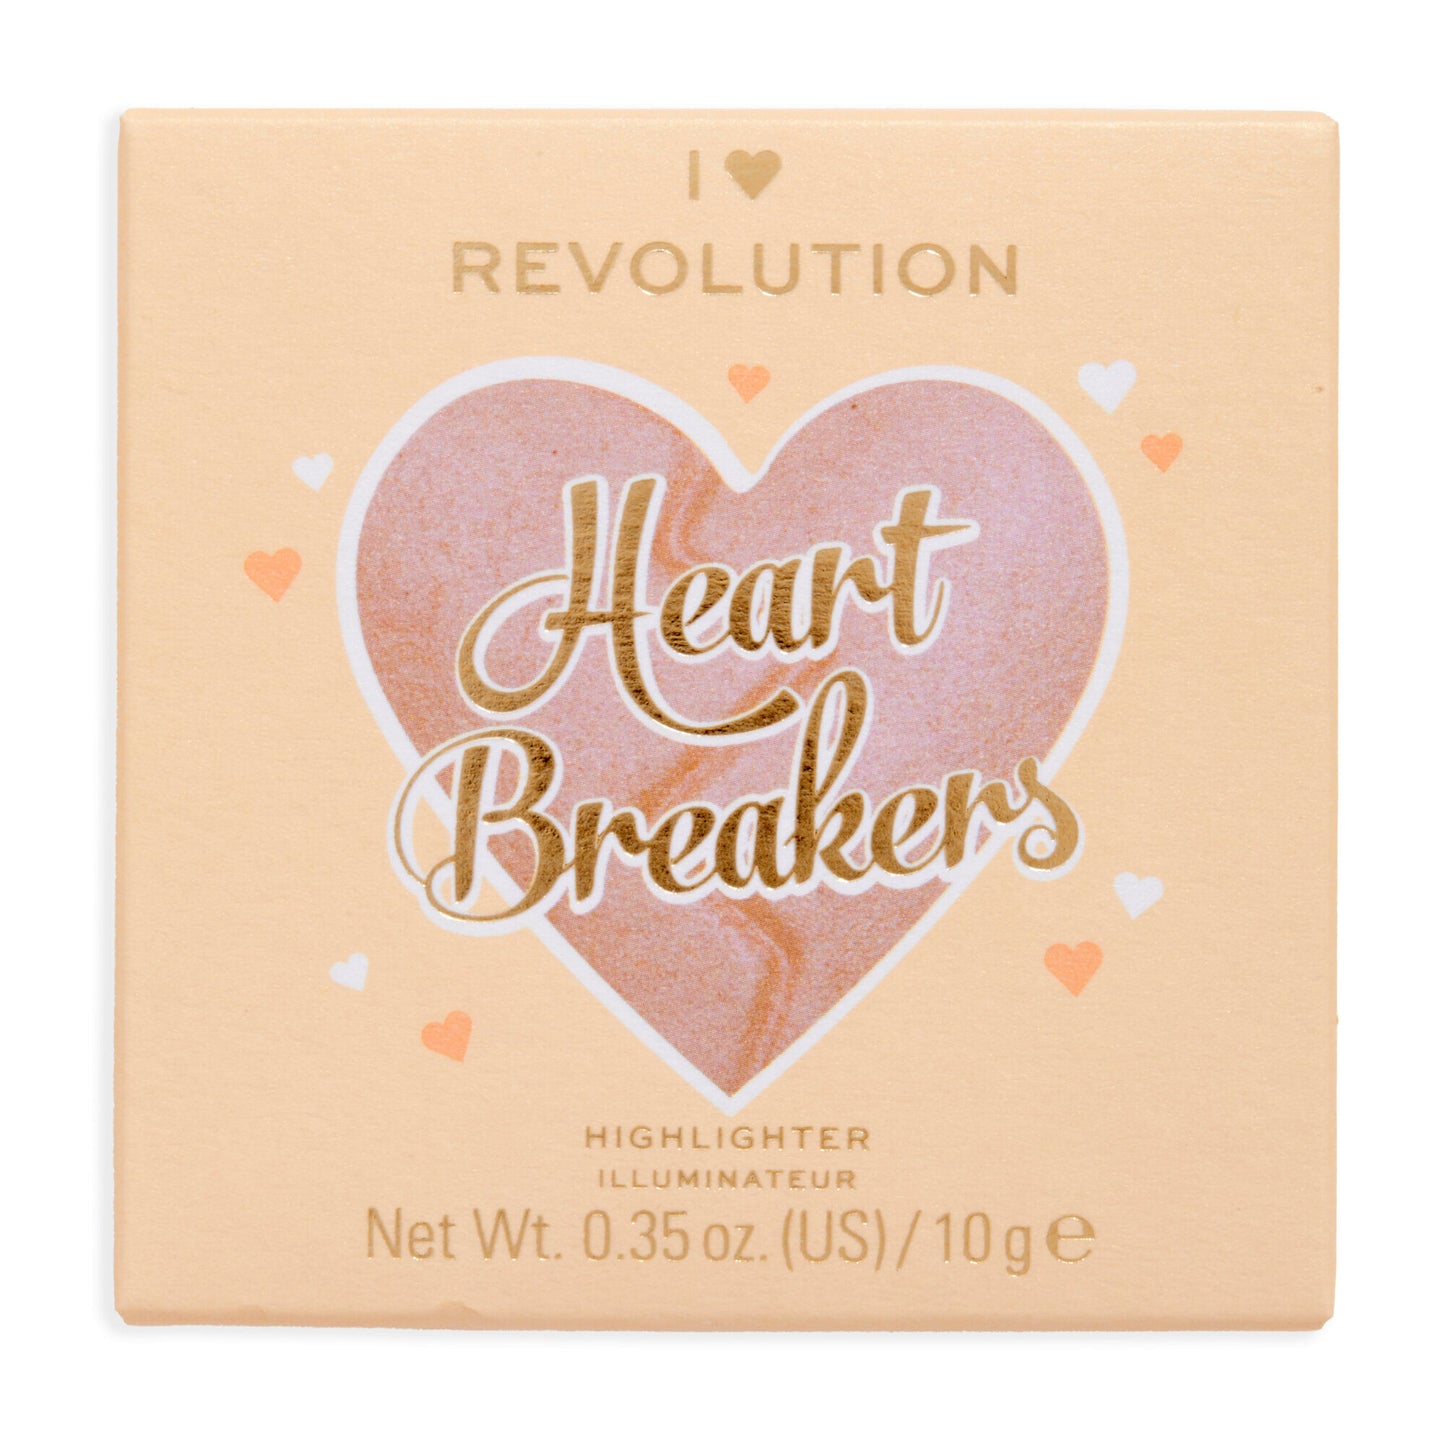 Revolution I Heart Revolution Heart Breakers Highlighter Divine